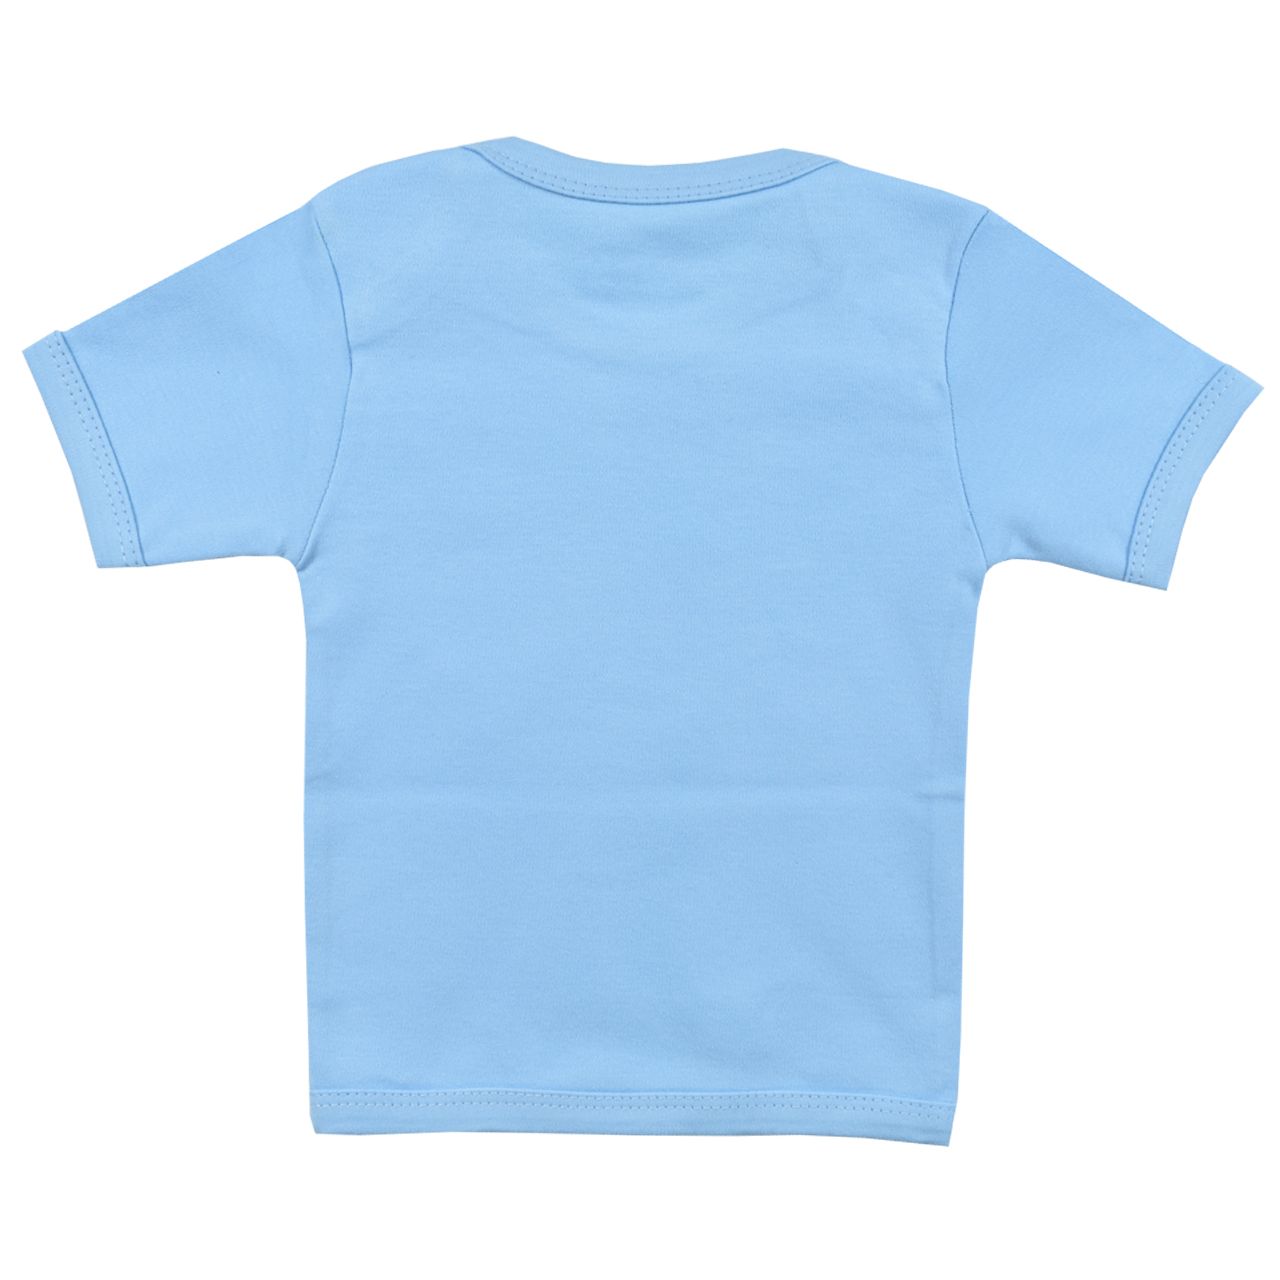 تی شرت آستین کوتاه نوزادی اسپیکو کد 300 -2 بسته دو عددی -  - 3